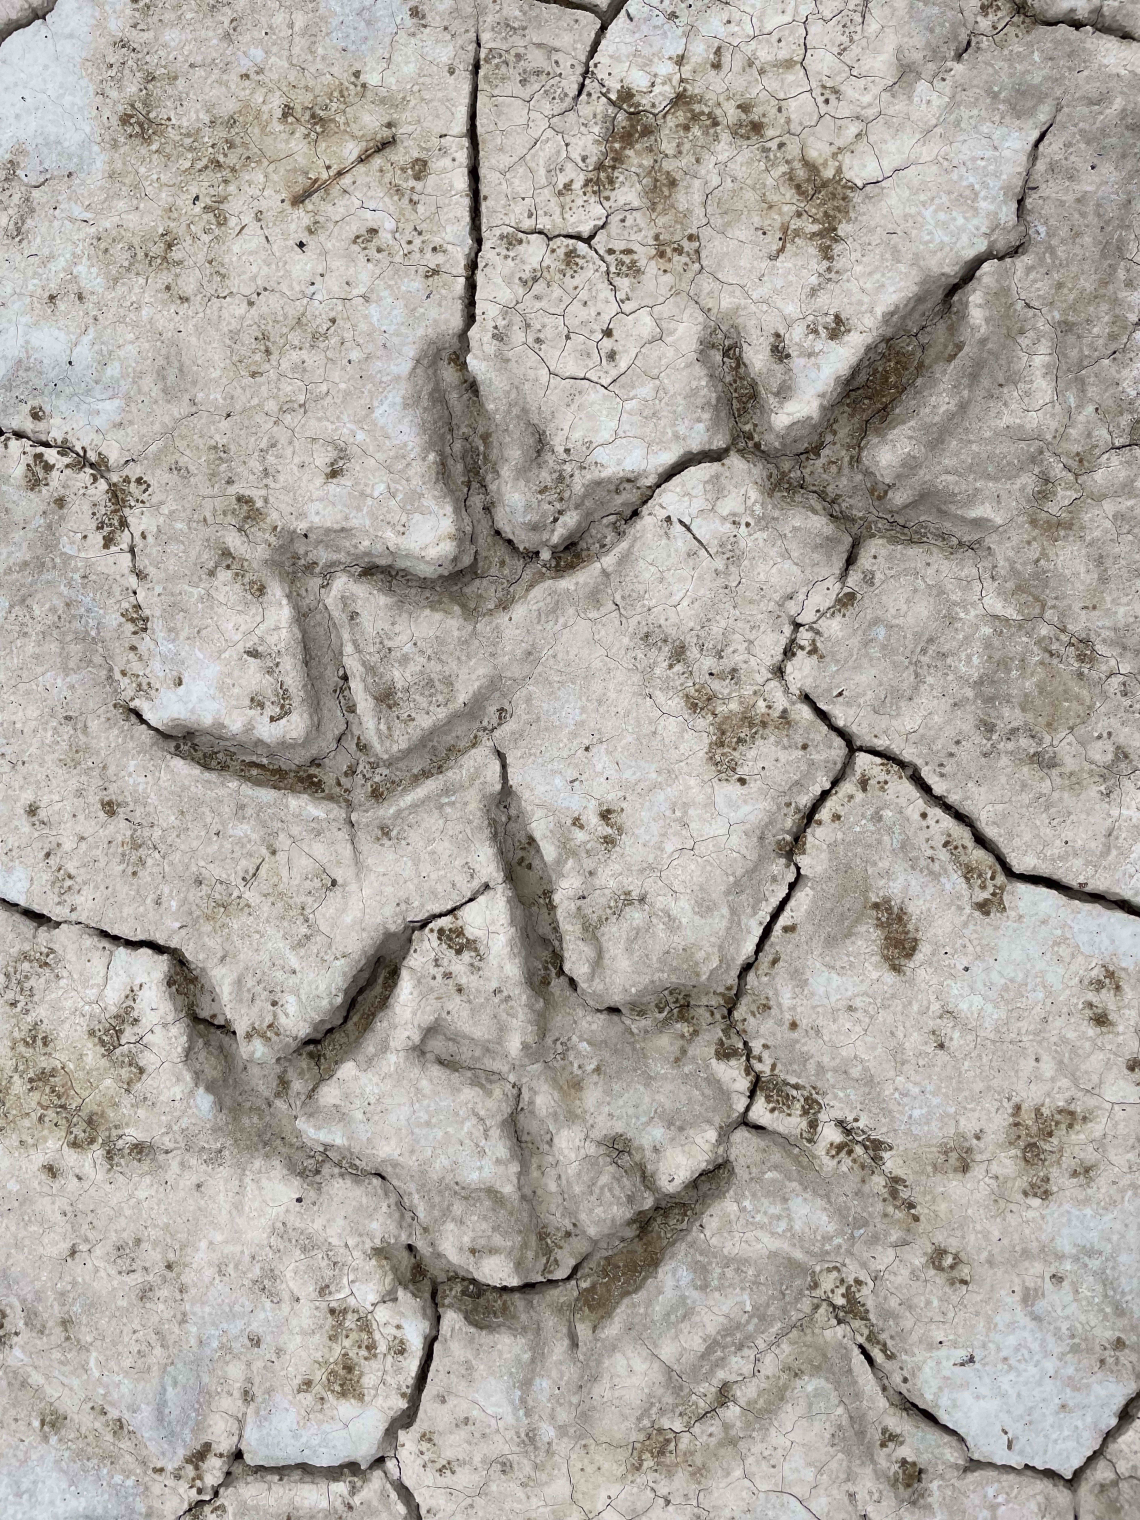 Gretchen Henderson photo of bird tracks in cracked mud